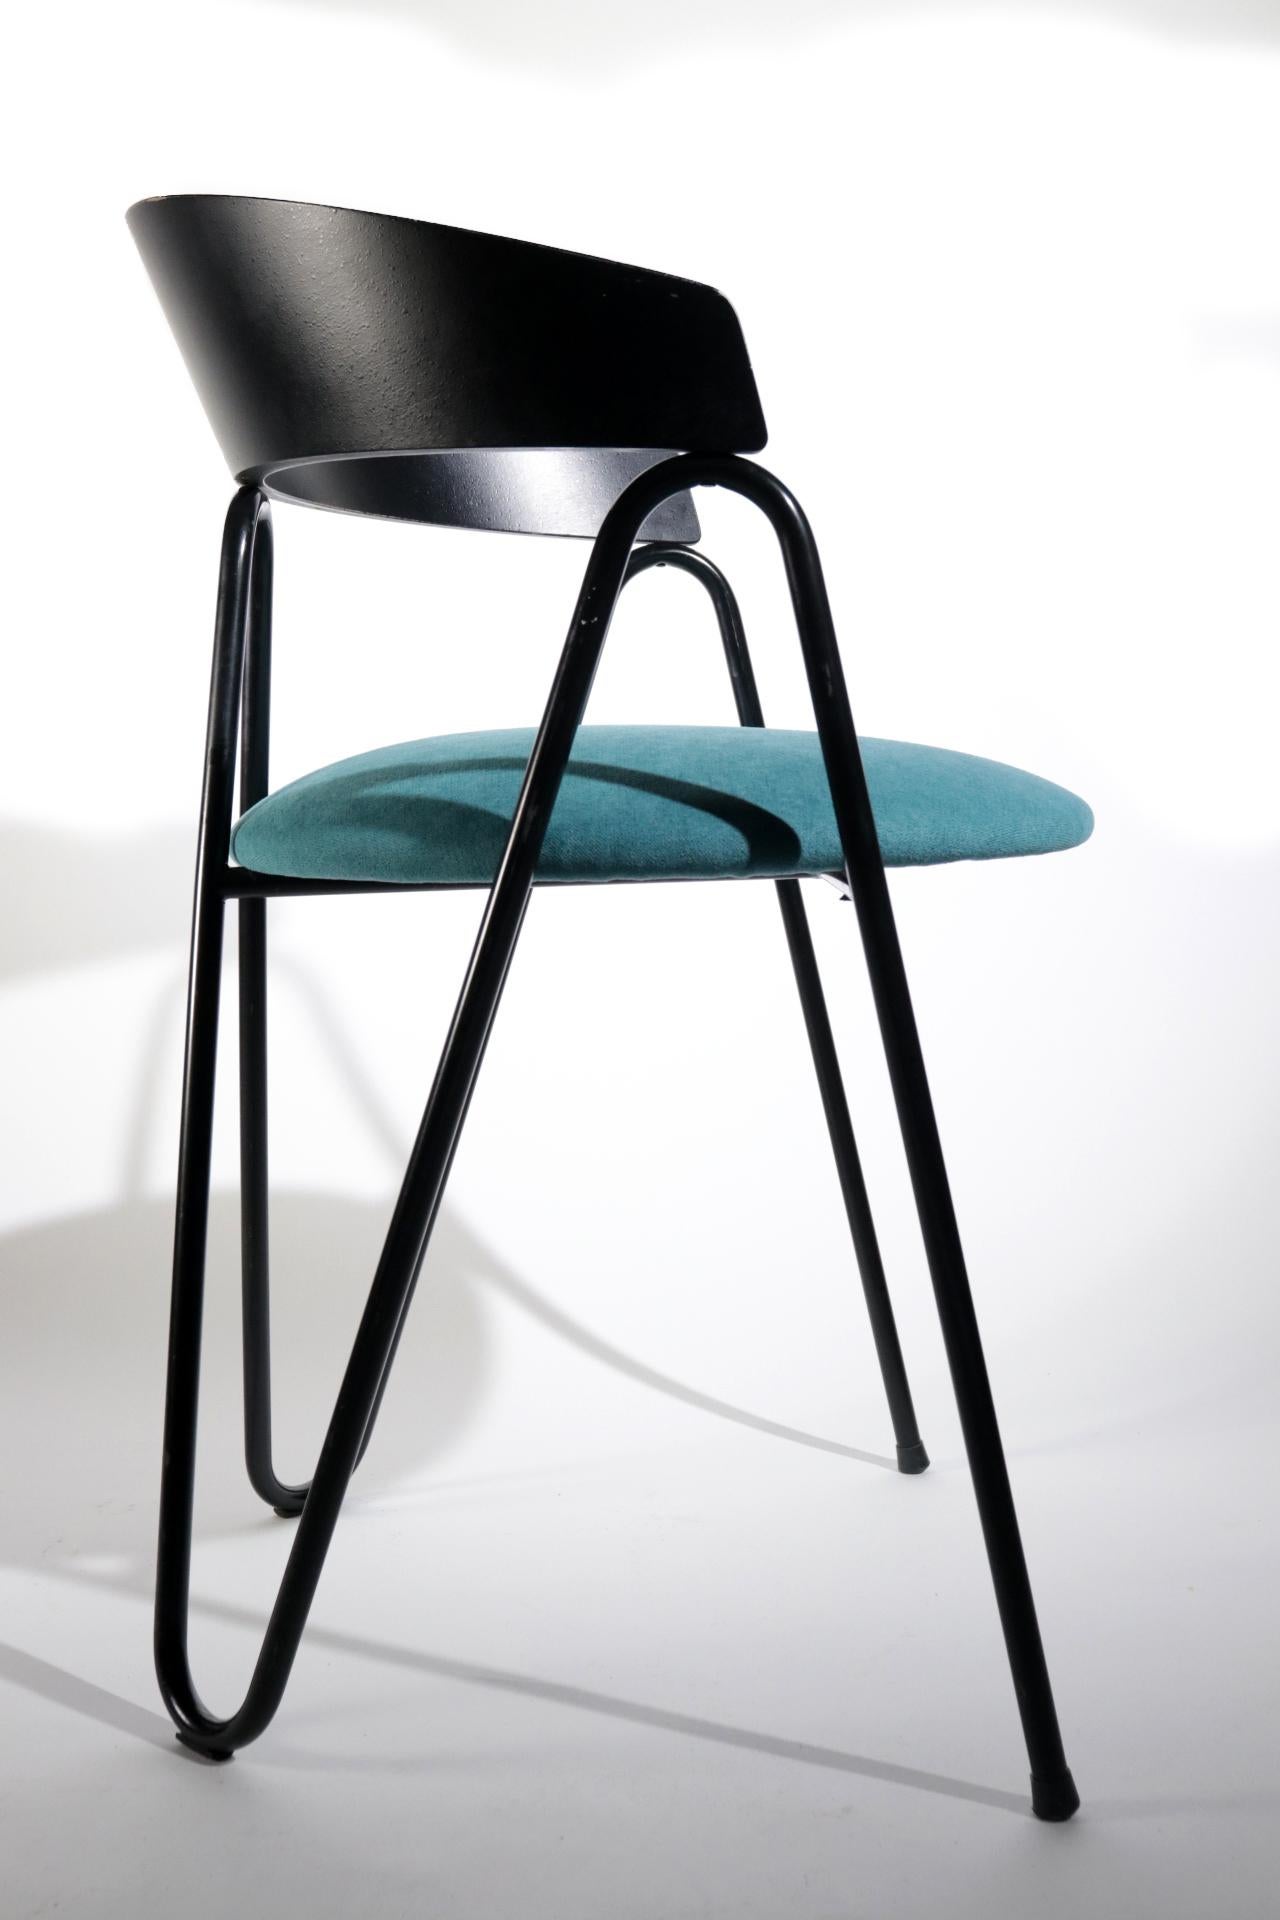 5 Stühle im Memphis-Milano-Stil, neu gepolstert mit einem schönen blau-grünen Stoff.
Schwarz beschichteter Metallrahmen und Holzrücken.